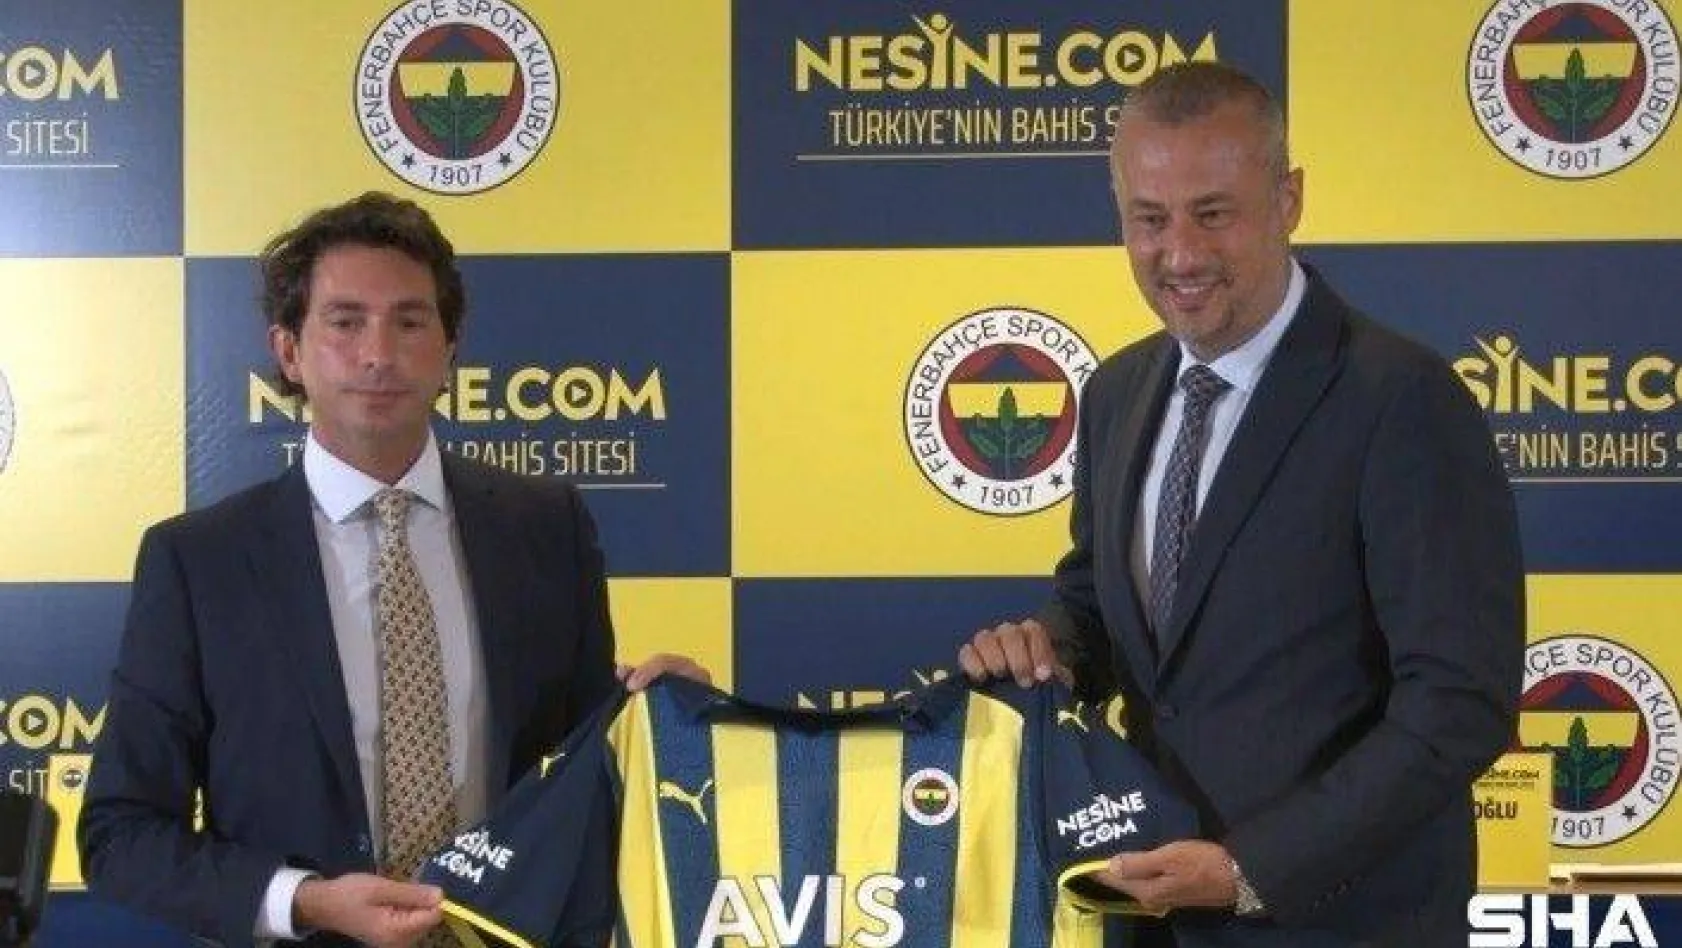 Fenerbahçe ile Nesine.com arasında forma kol sponsorluğu anlaşması imzalandı